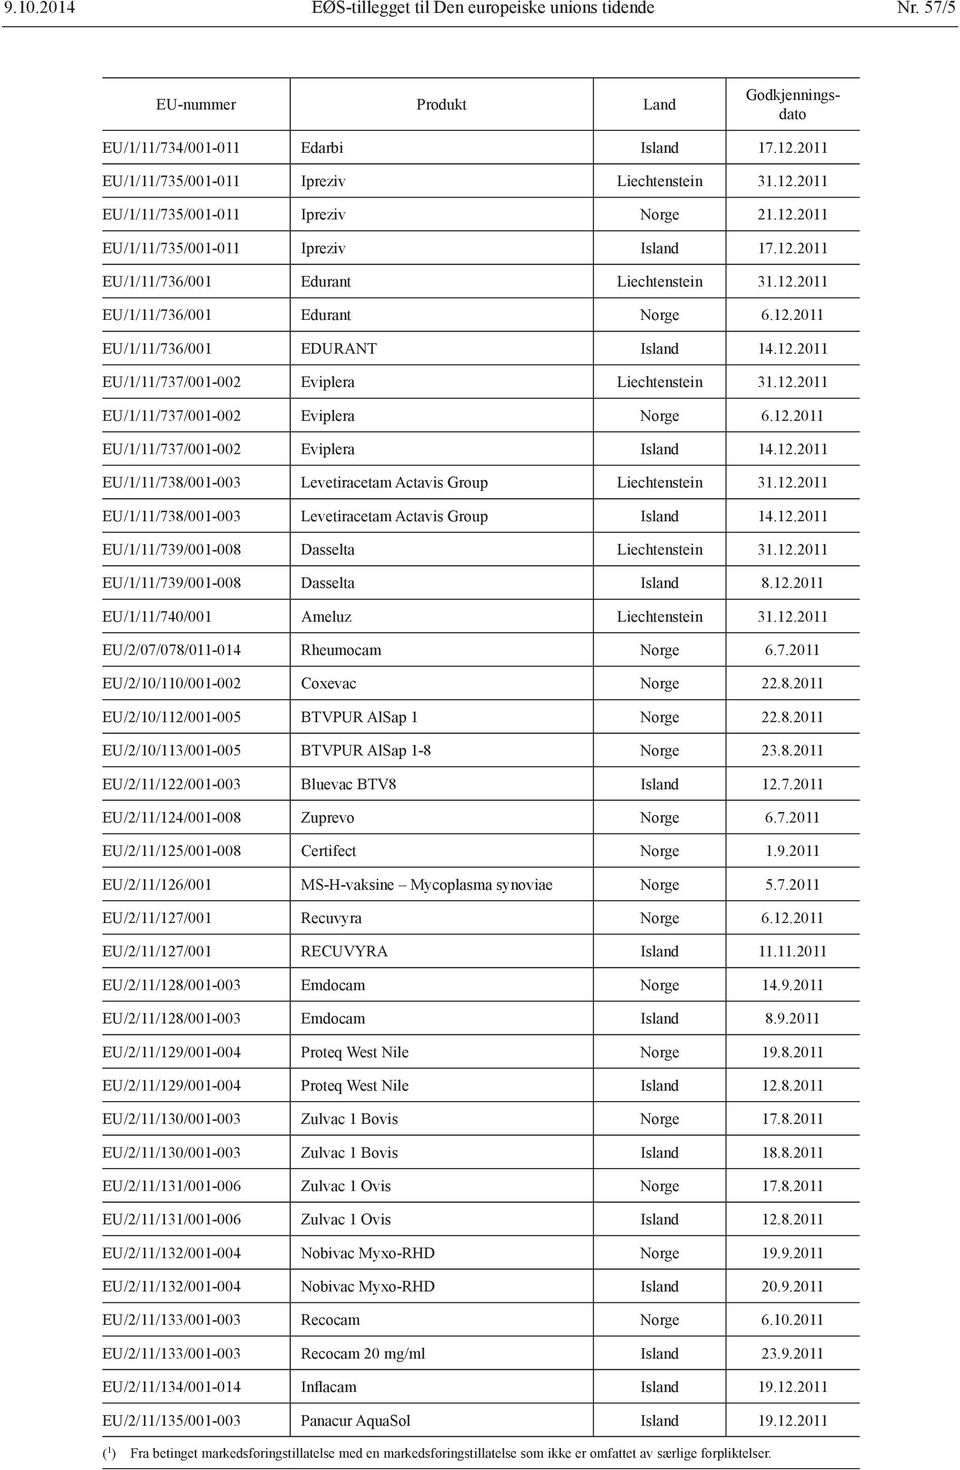 12.2011 EU/1/11/737/001-002 Eviplera Norge 6.12.2011 EU/1/11/737/001-002 Eviplera Island 14.12.2011 EU/1/11/738/001-003 Levetiracetam Actavis Group Liechtenstein 31.12.2011 EU/1/11/738/001-003 Levetiracetam Actavis Group Island 14.